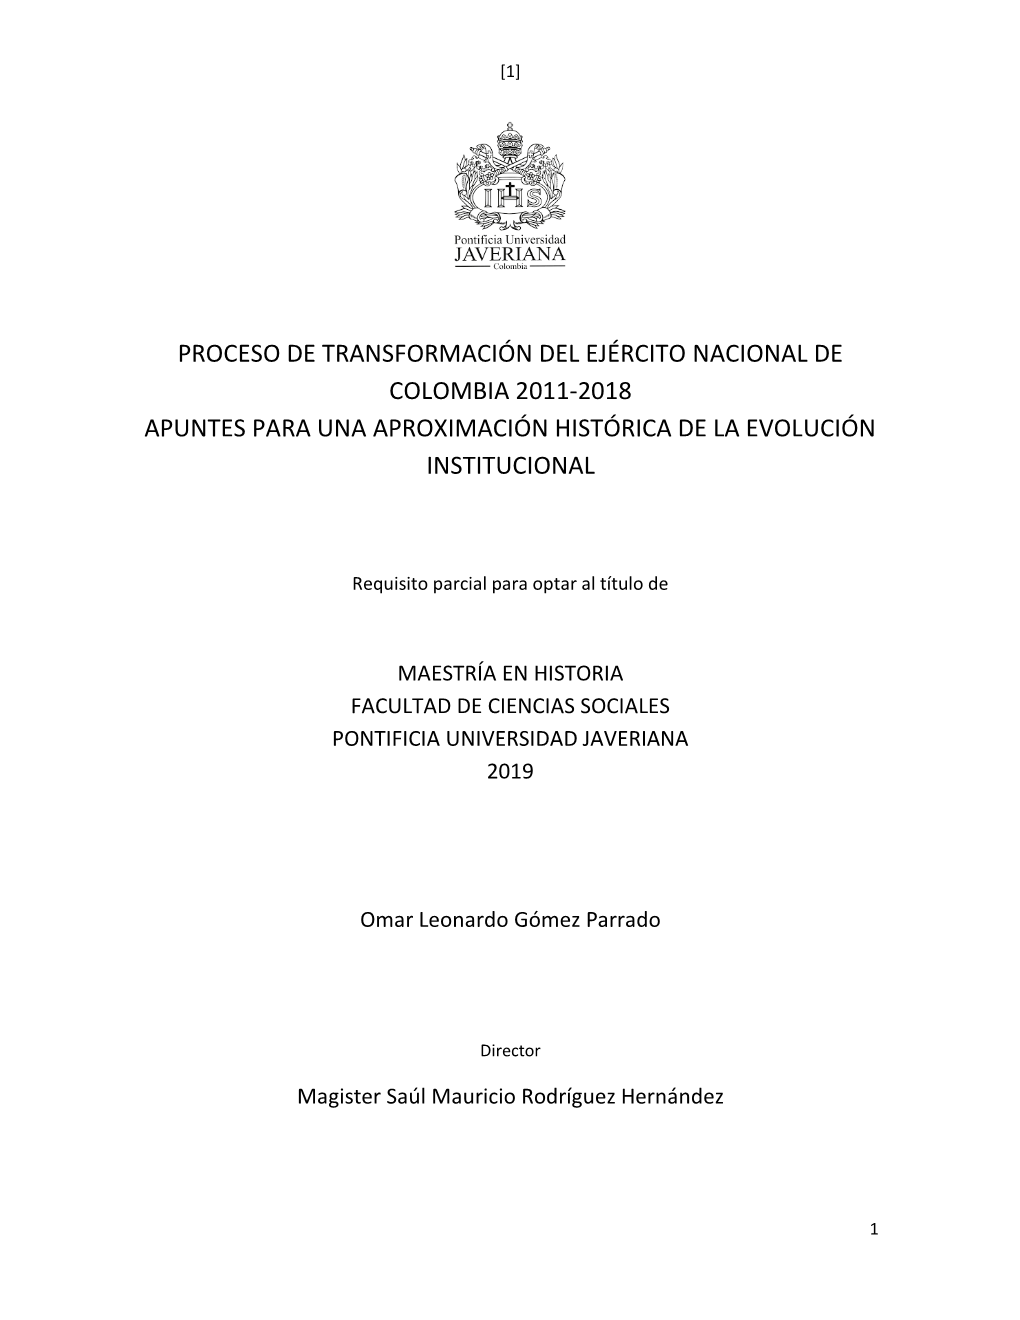 Proceso De Transformación Del Ejército Nacional De Colombia 2011-2018 Apuntes Para Una Aproximación Histórica De La Evolución Institucional